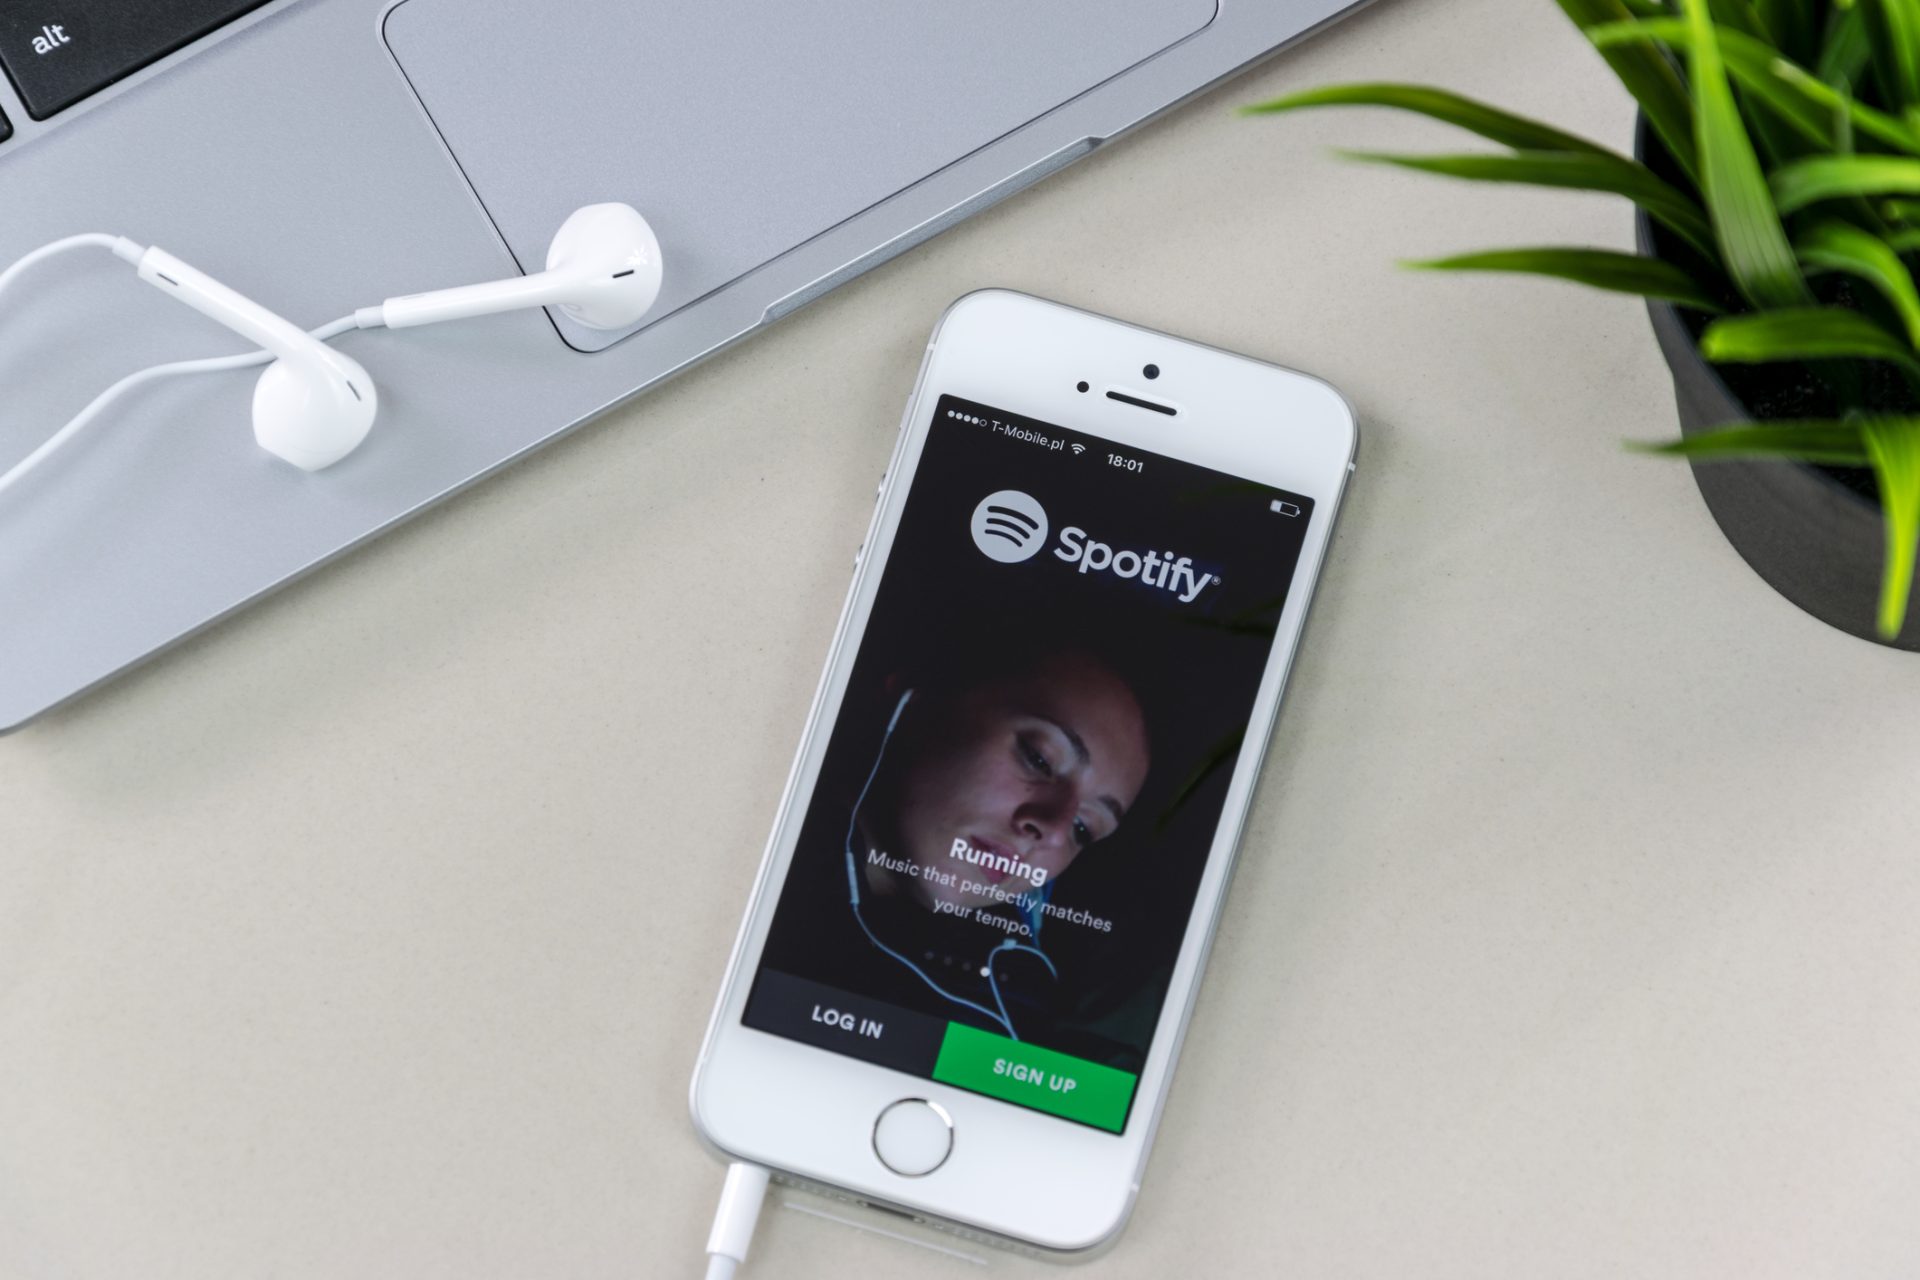 Nova regra do Spotify pode levar à suspensão de várias contas